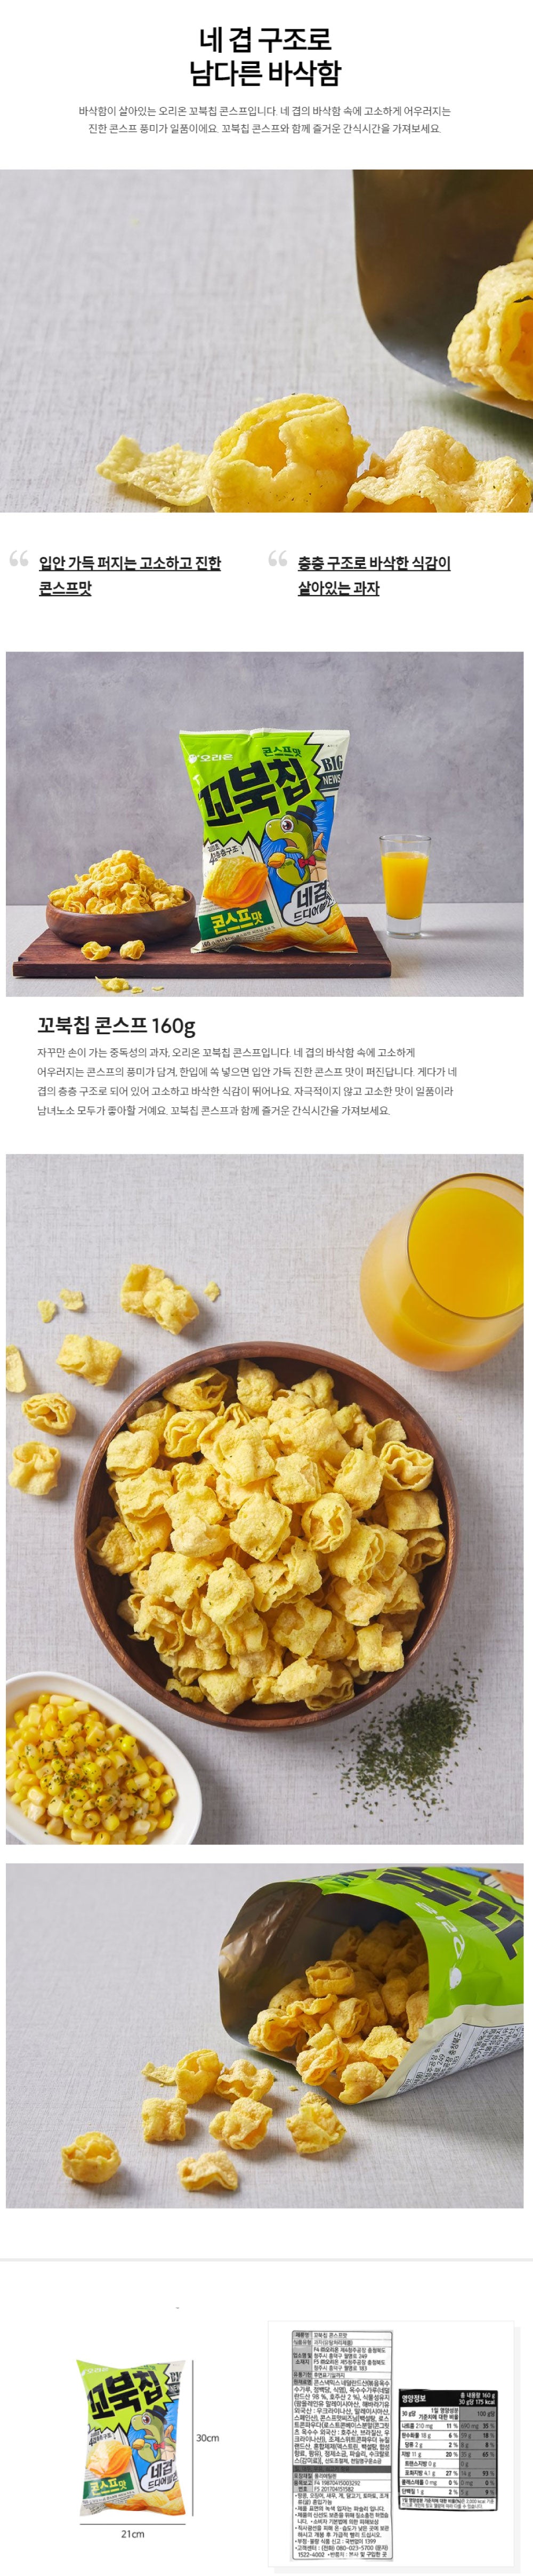 꼬북칩 콘소메 과자 인기 한국과자 시드니 호주 마트